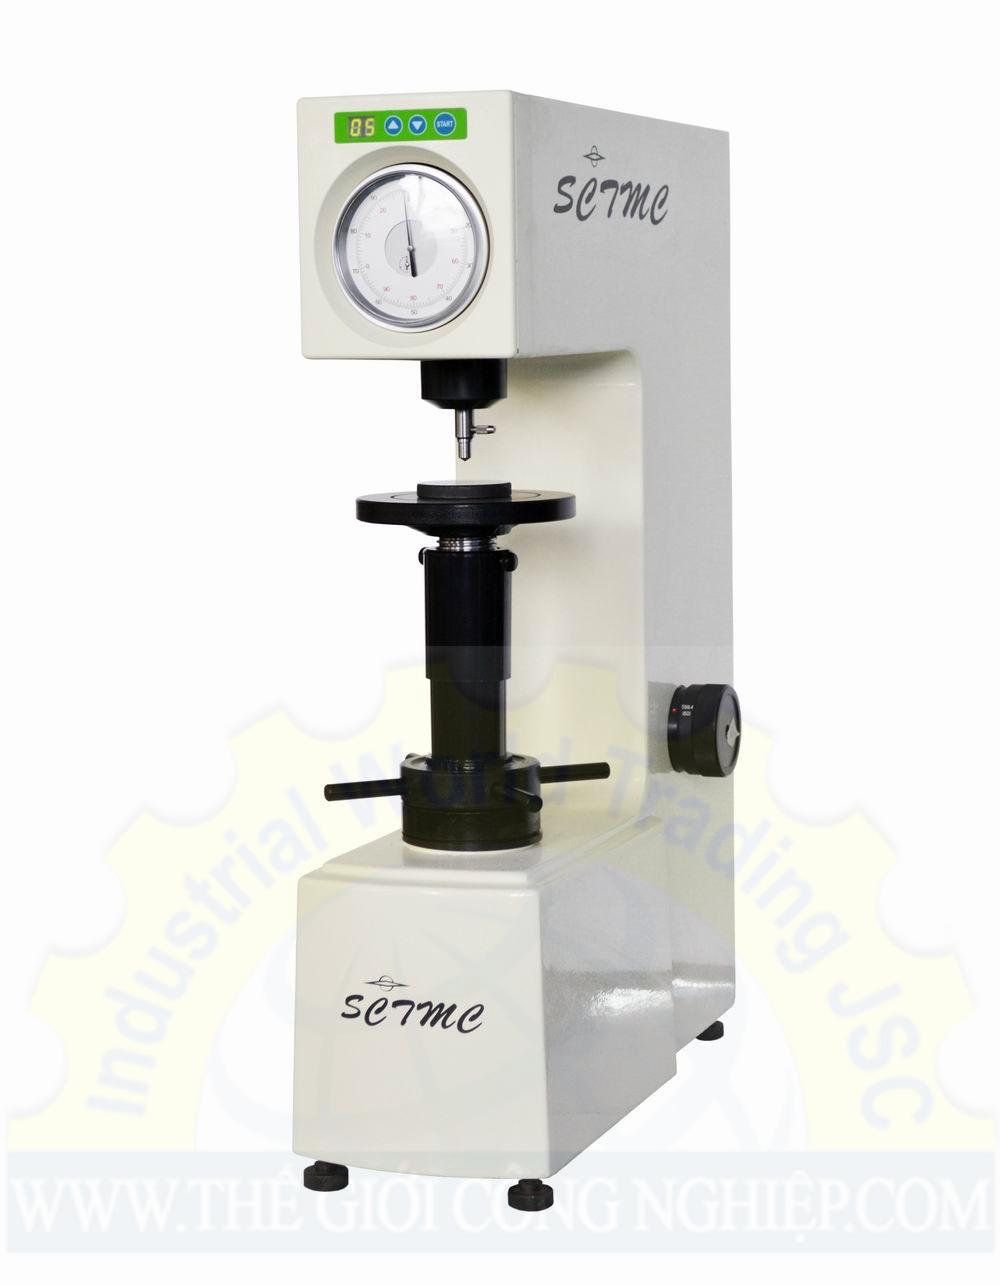 Máy đo độ cứng kim loại thang đo Rockwell 0-100 HR, độ chia 0.5 HR, hiển thị đồng hồ cơ